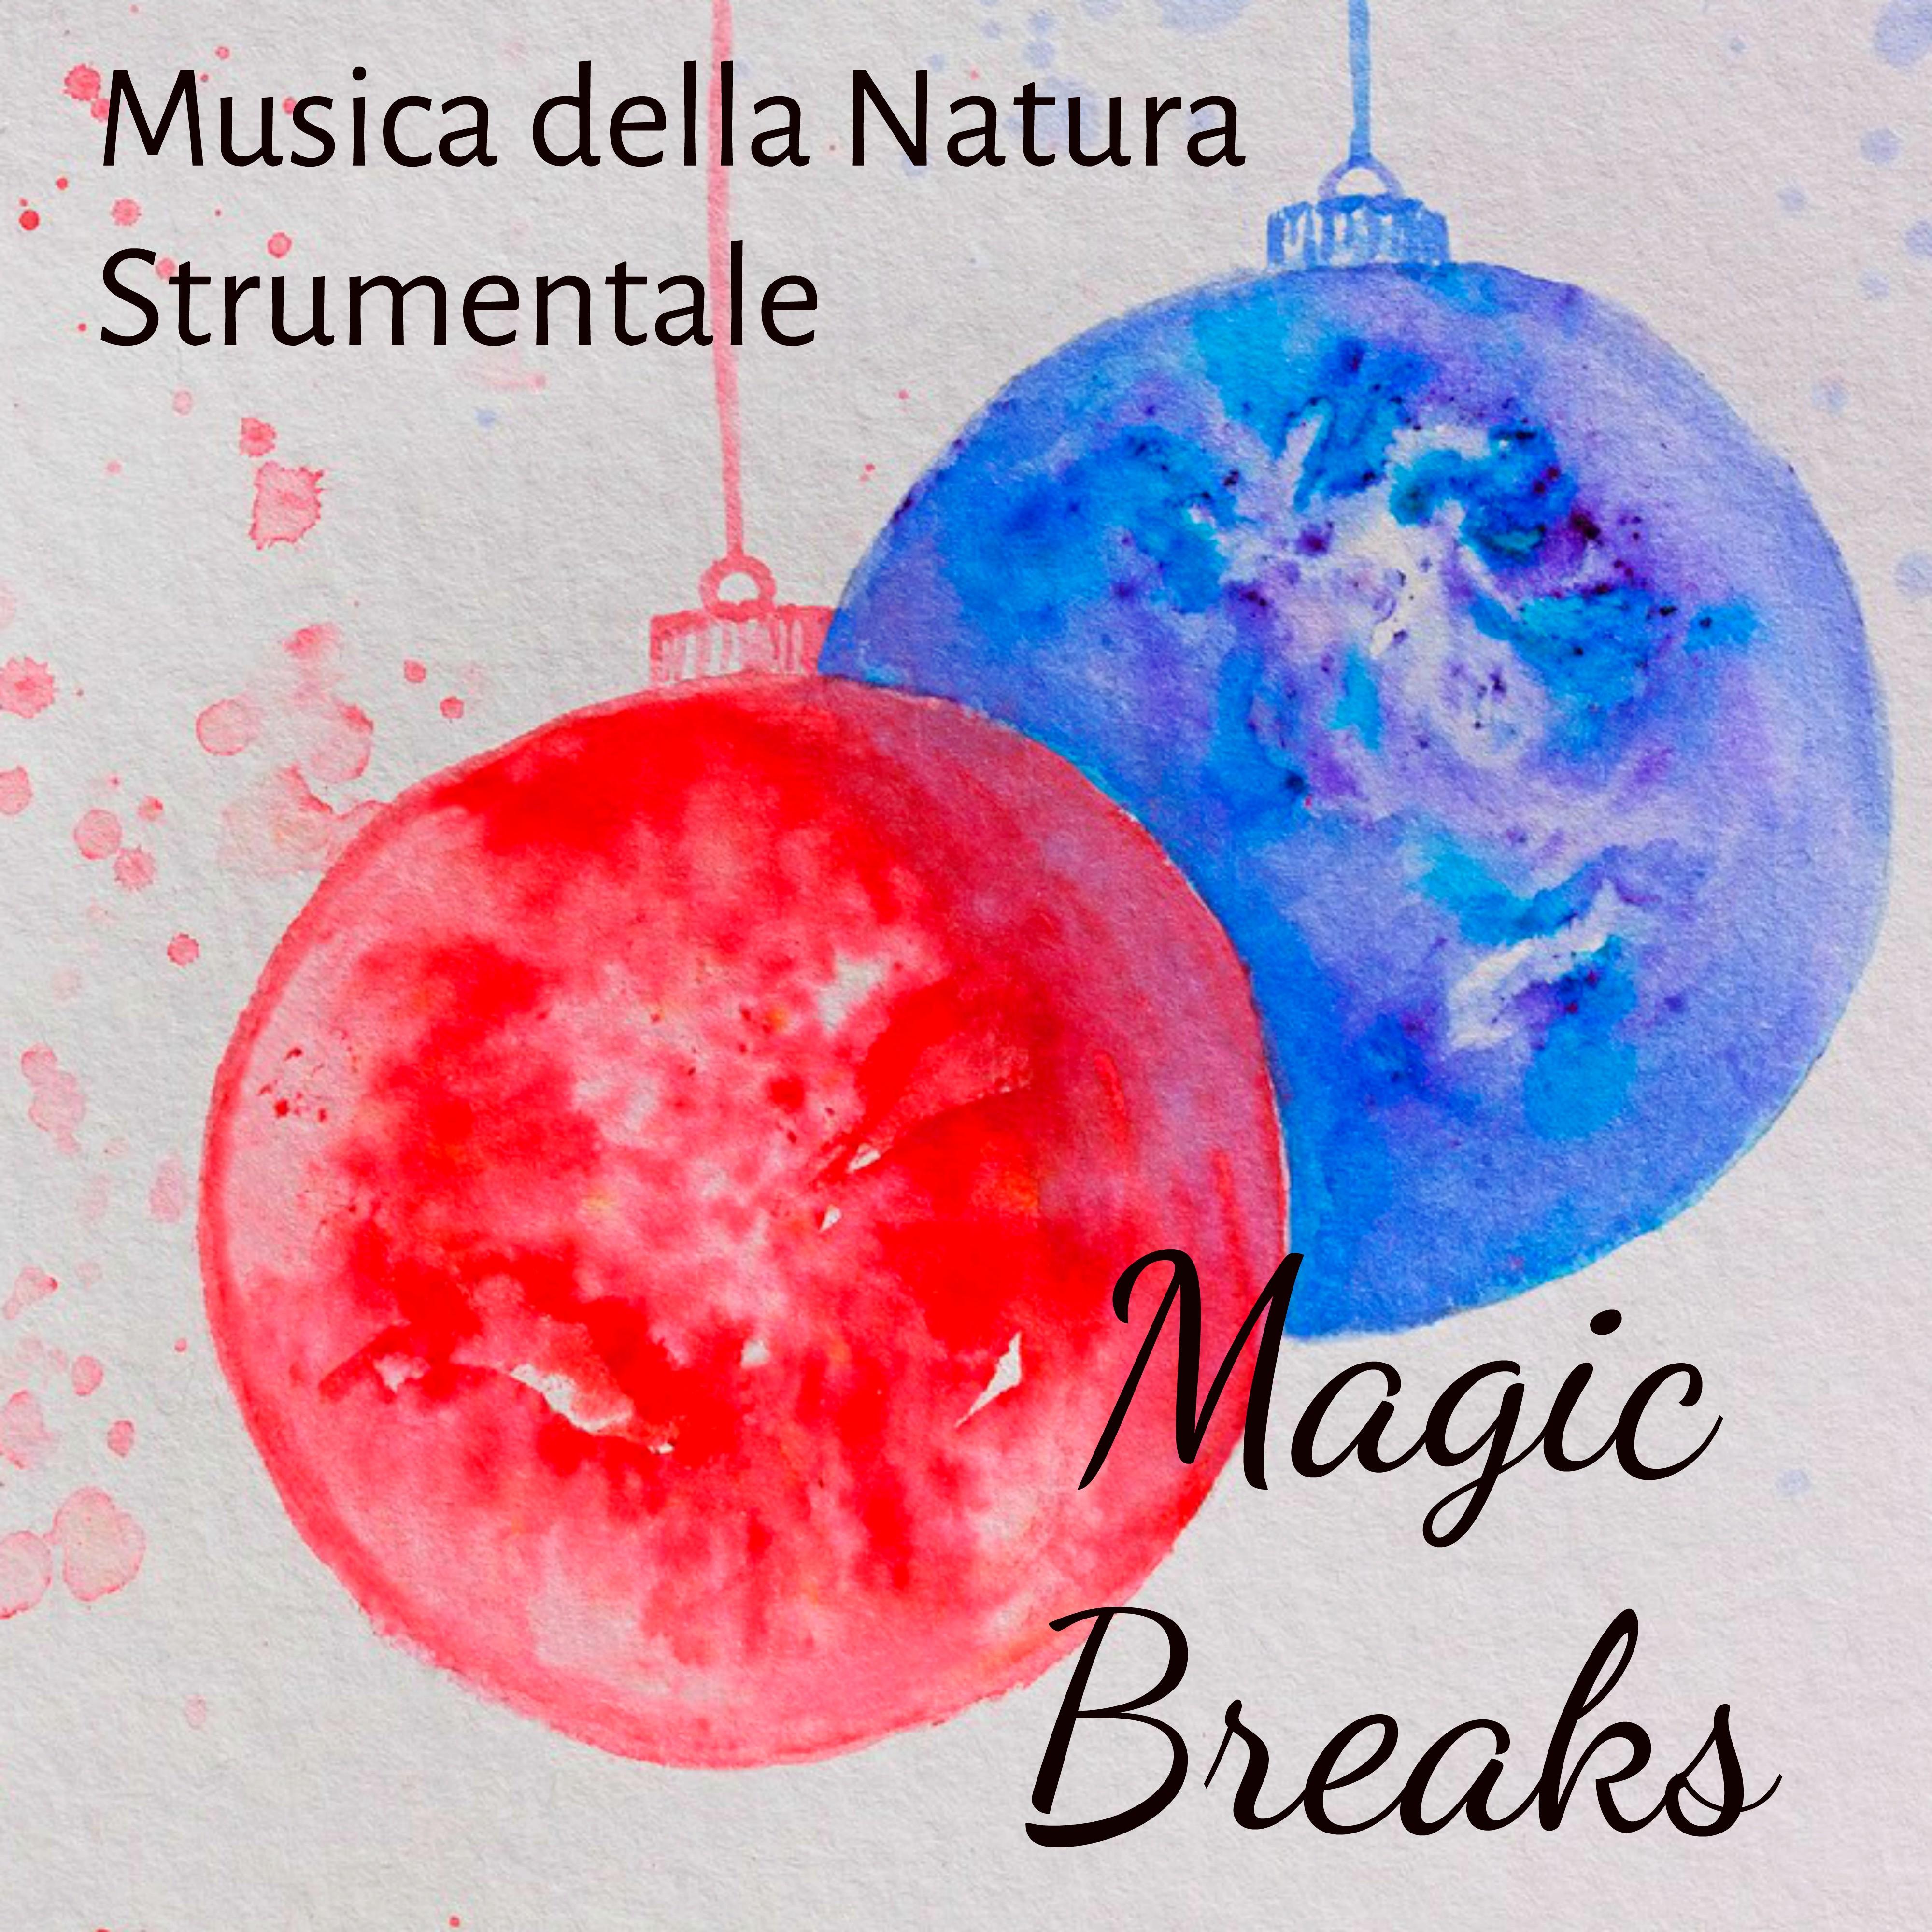 Magic Breaks - Musica della Natura Strumentale per Benessere Fisico e Mentale pausa Natalizia un Nuovo Inizio con Suoni Rilassanti Binaurali New Age